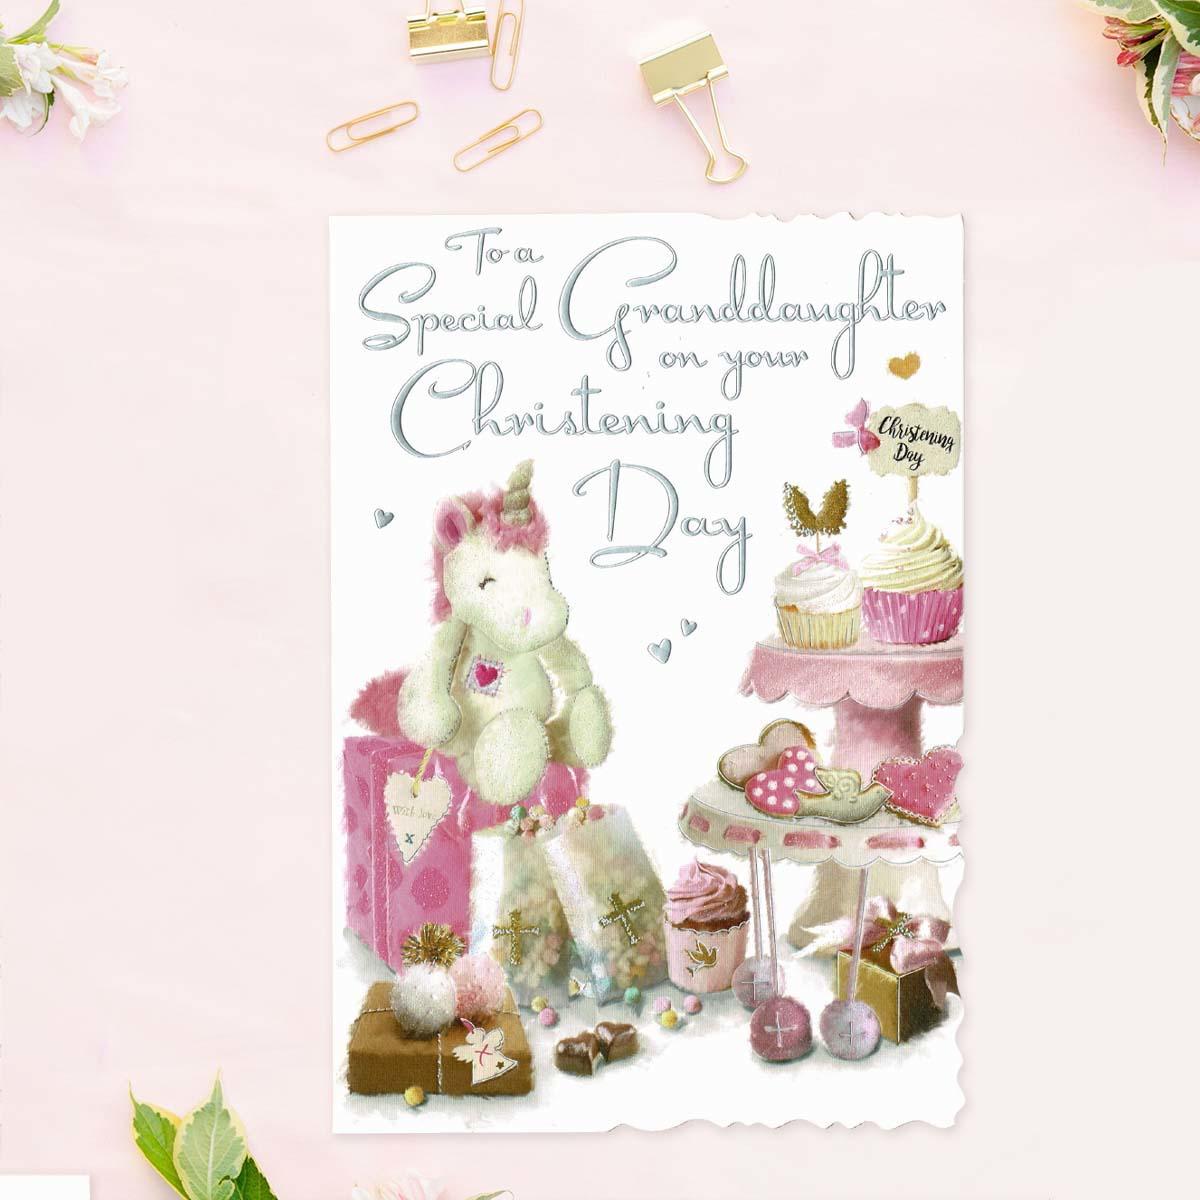 Velvet - Granddaughter Christening Day Card Front IImage